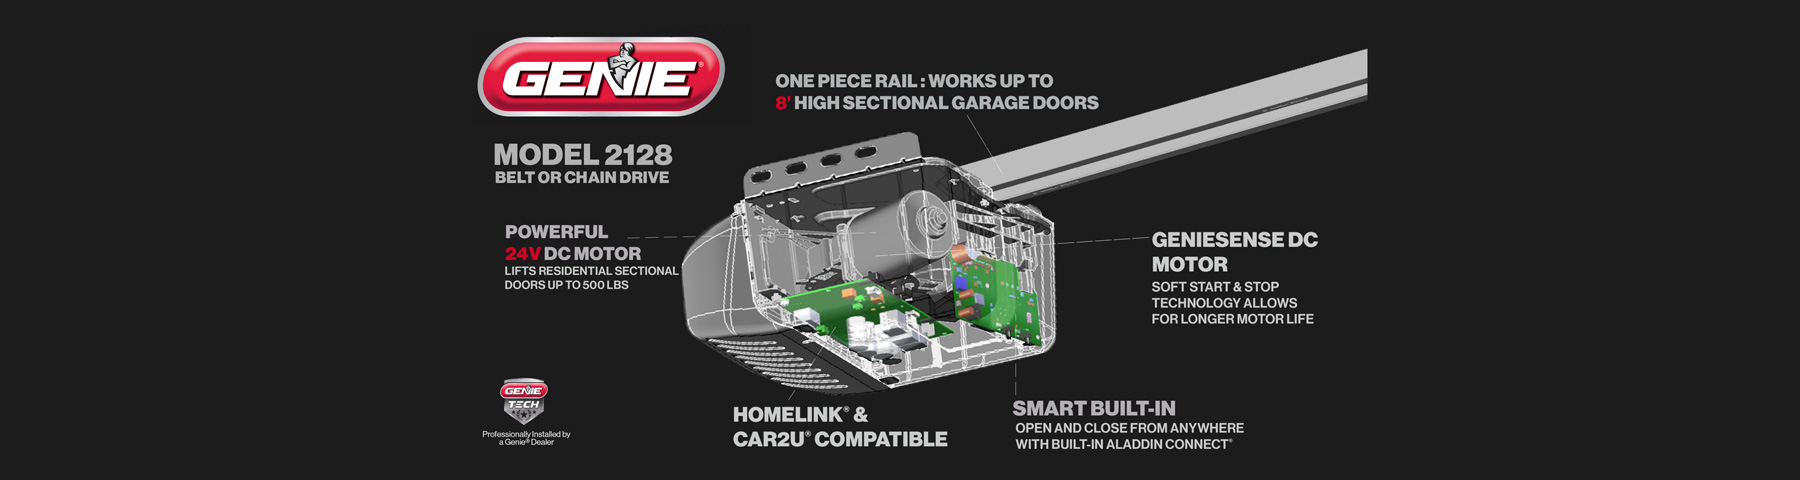 Genie 2128 Garage Door Opener Features